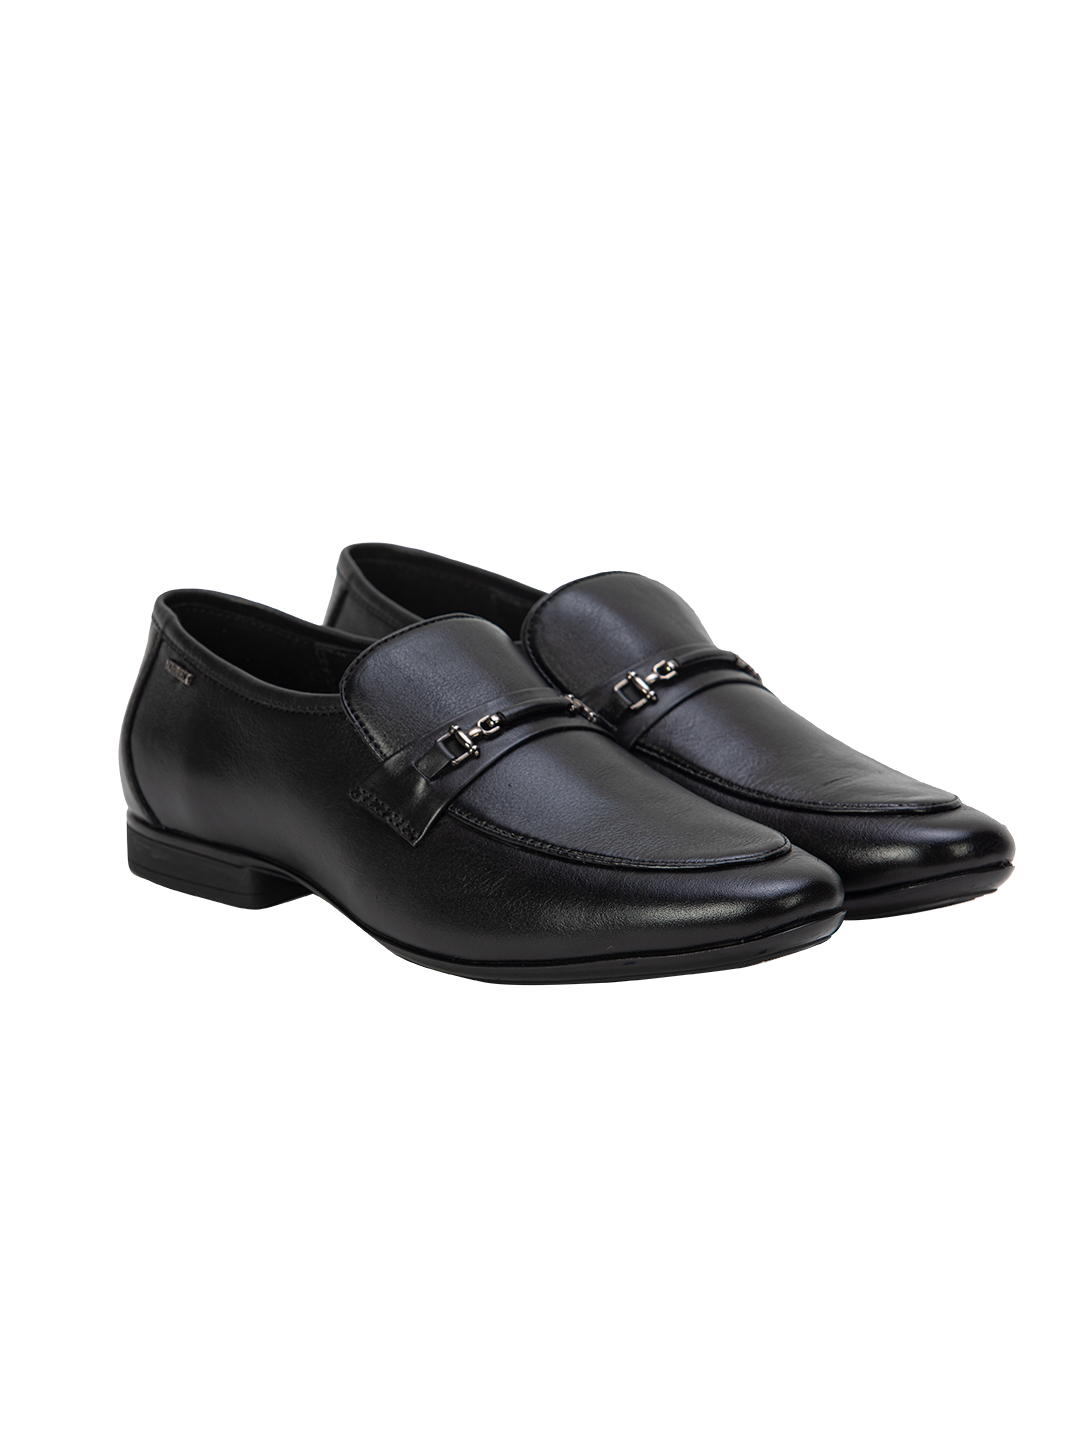 Buy Von Wellx Germany Comfort Black Glib Shoes Online in Qatar